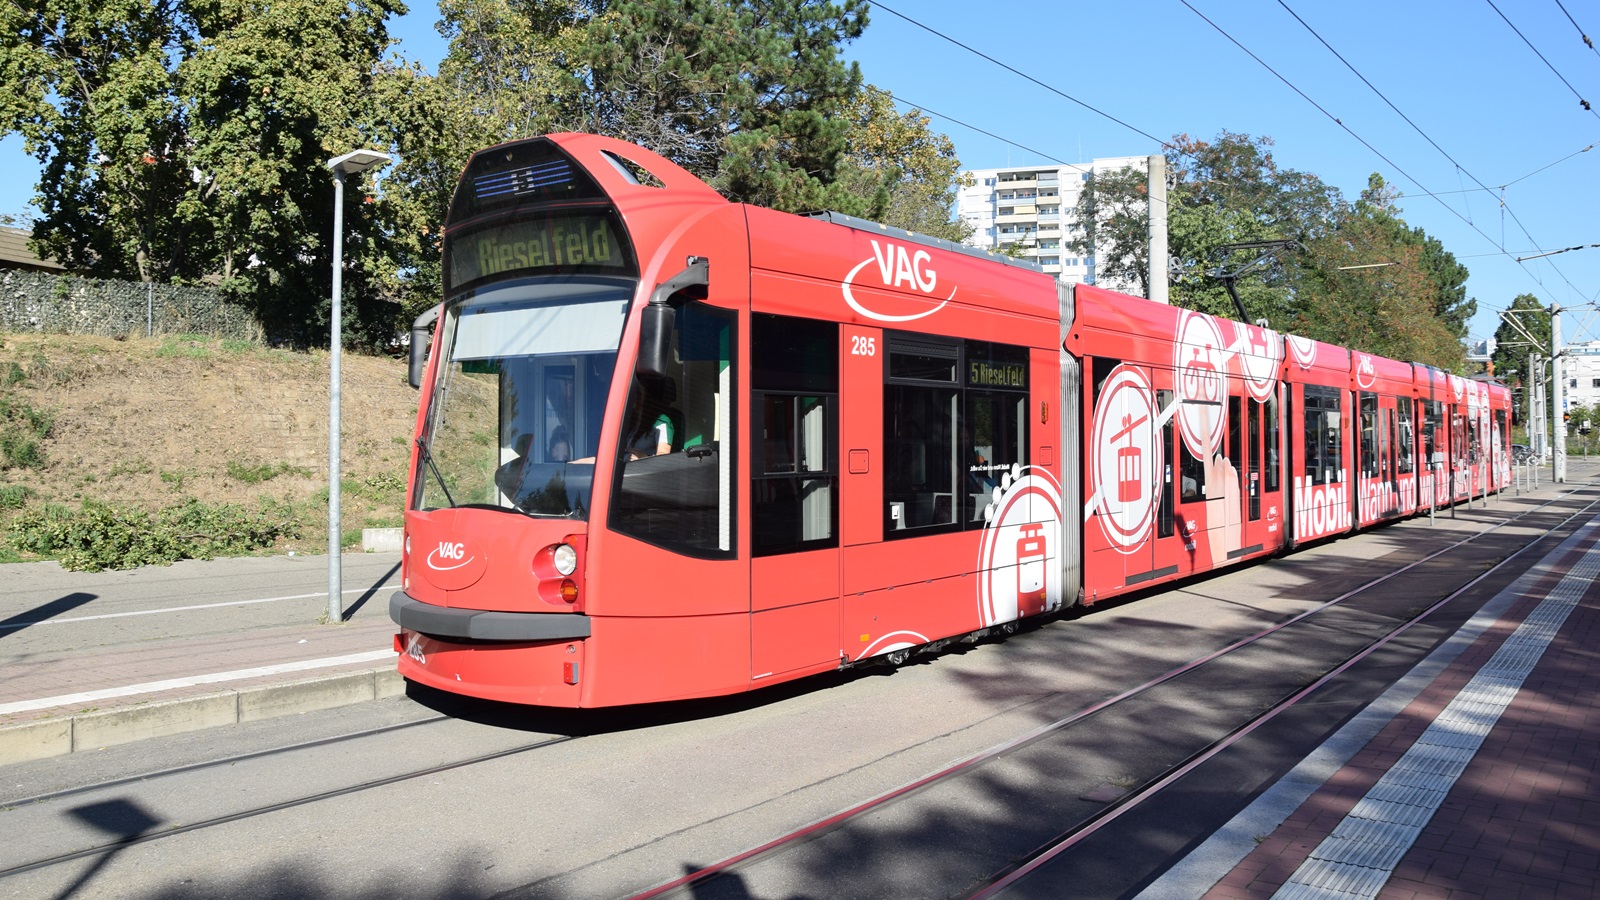 Am 08.09.2020 habe ich diese Straßenbahn mit Hersteller Siemens Nr. 285 in Freiburg im Breisgau aufgenommen.